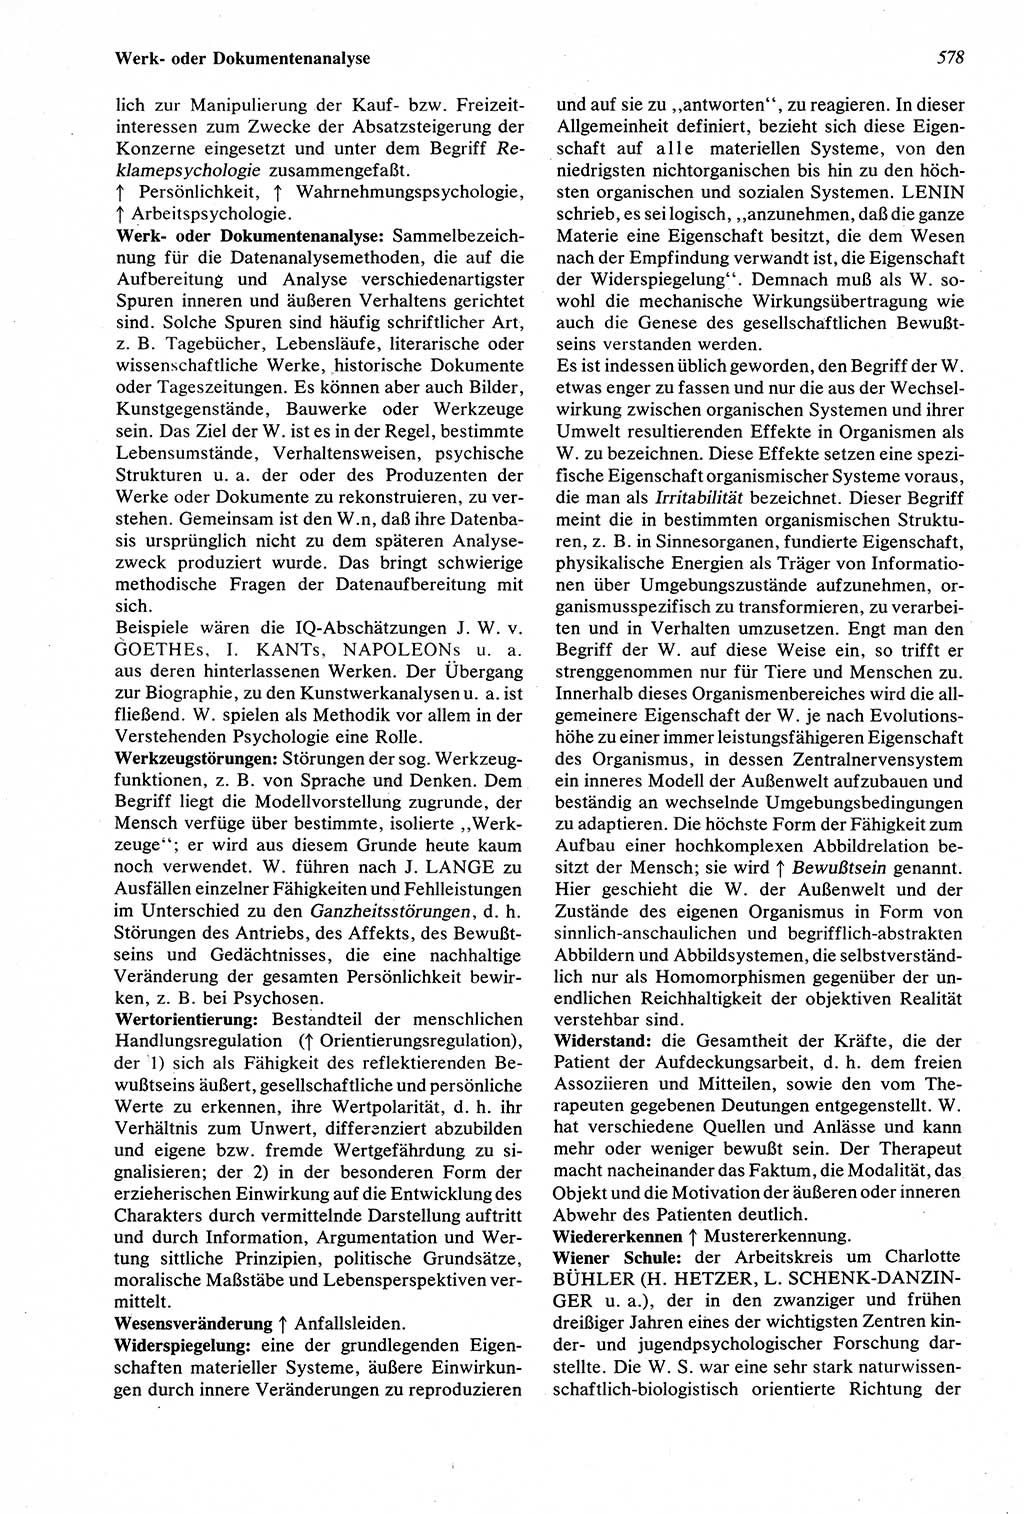 Wörterbuch der Psychologie [Deutsche Demokratische Republik (DDR)] 1976, Seite 578 (Wb. Psych. DDR 1976, S. 578)